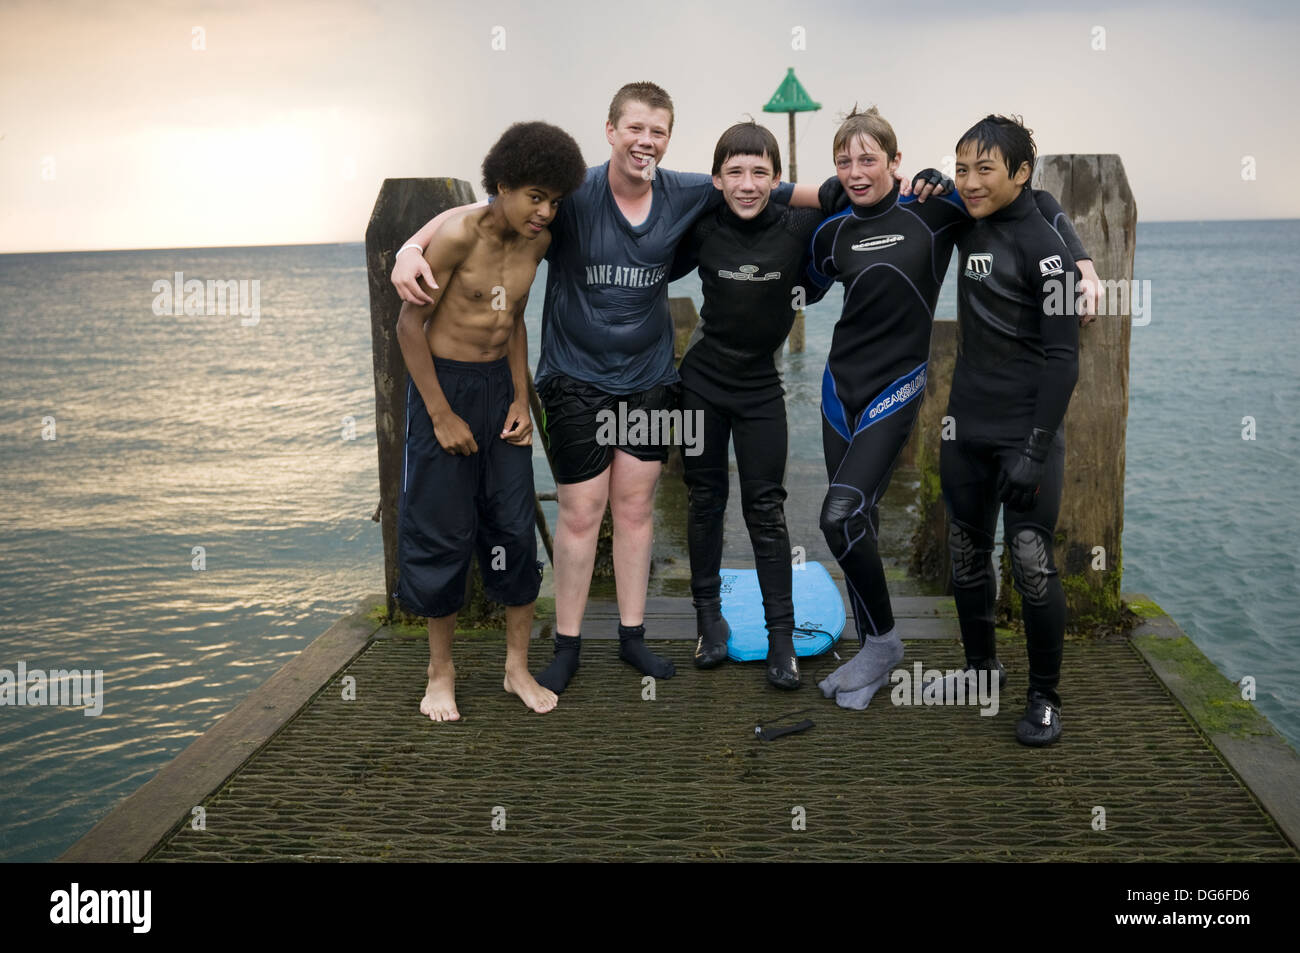 Inter - gruppo razziale di cinque ragazzi adolescenti, cinese nero e  bianco, in piedi sul jetty pier, serata estiva, indossando vestiti bagnati  Foto stock - Alamy